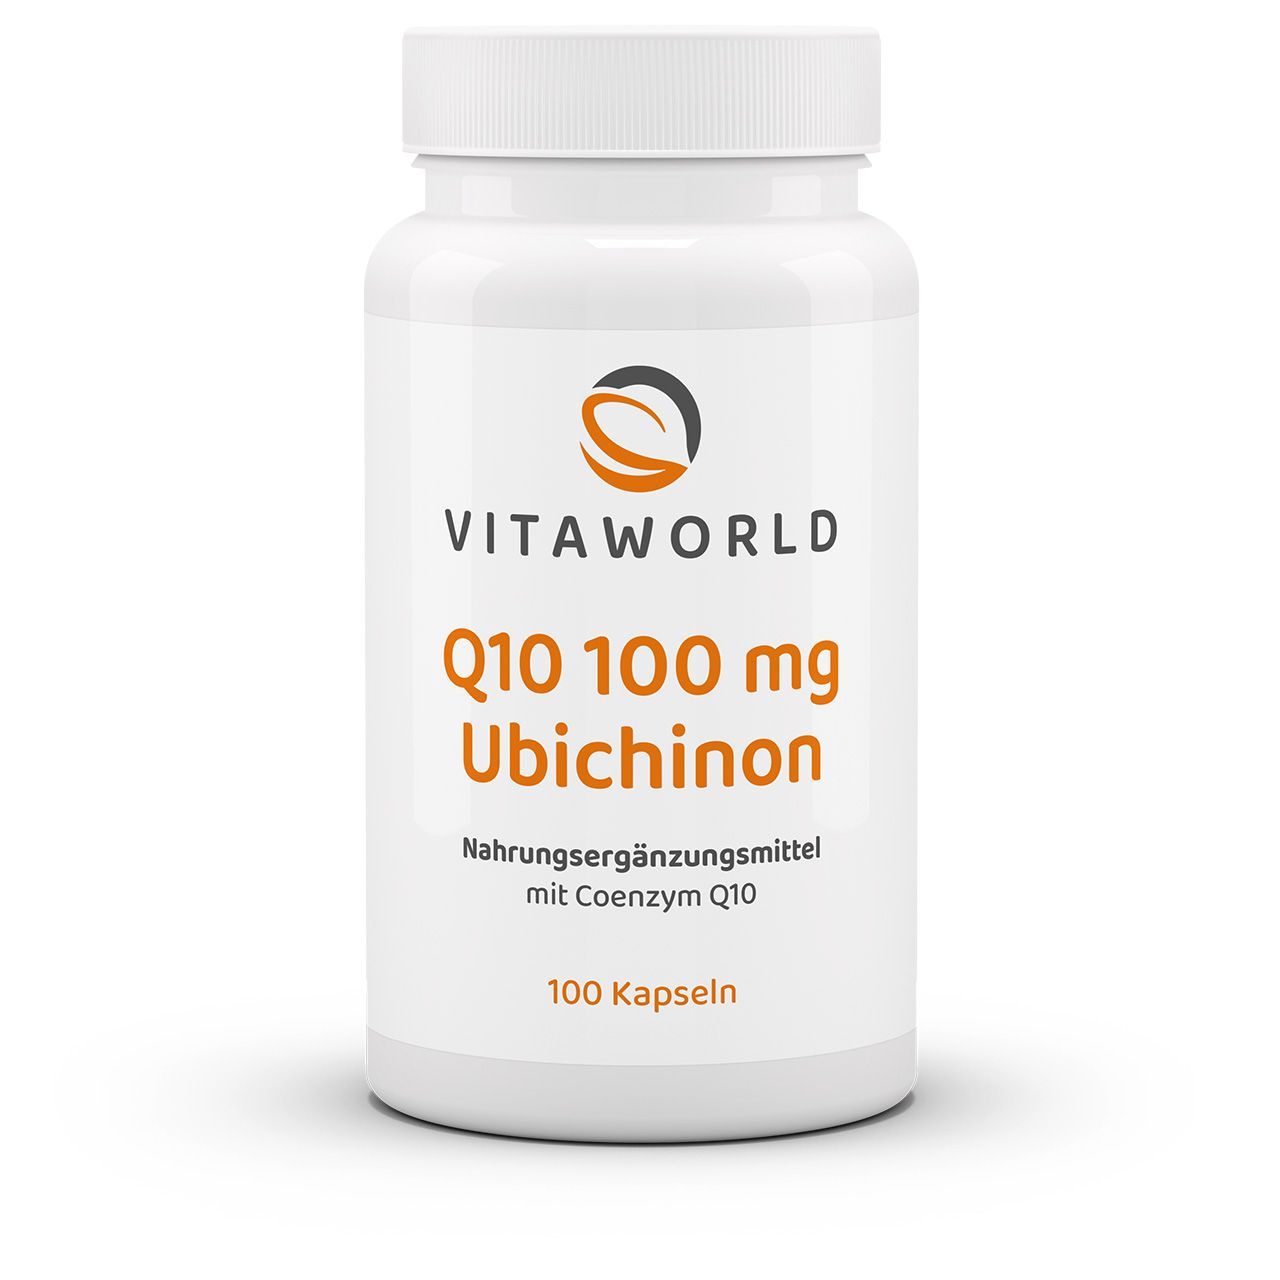 Vitaworld Q10 100 mg Ubichinon | 100 Kapseln | 100% natürlich | vegan | gluten- und laktosefrei